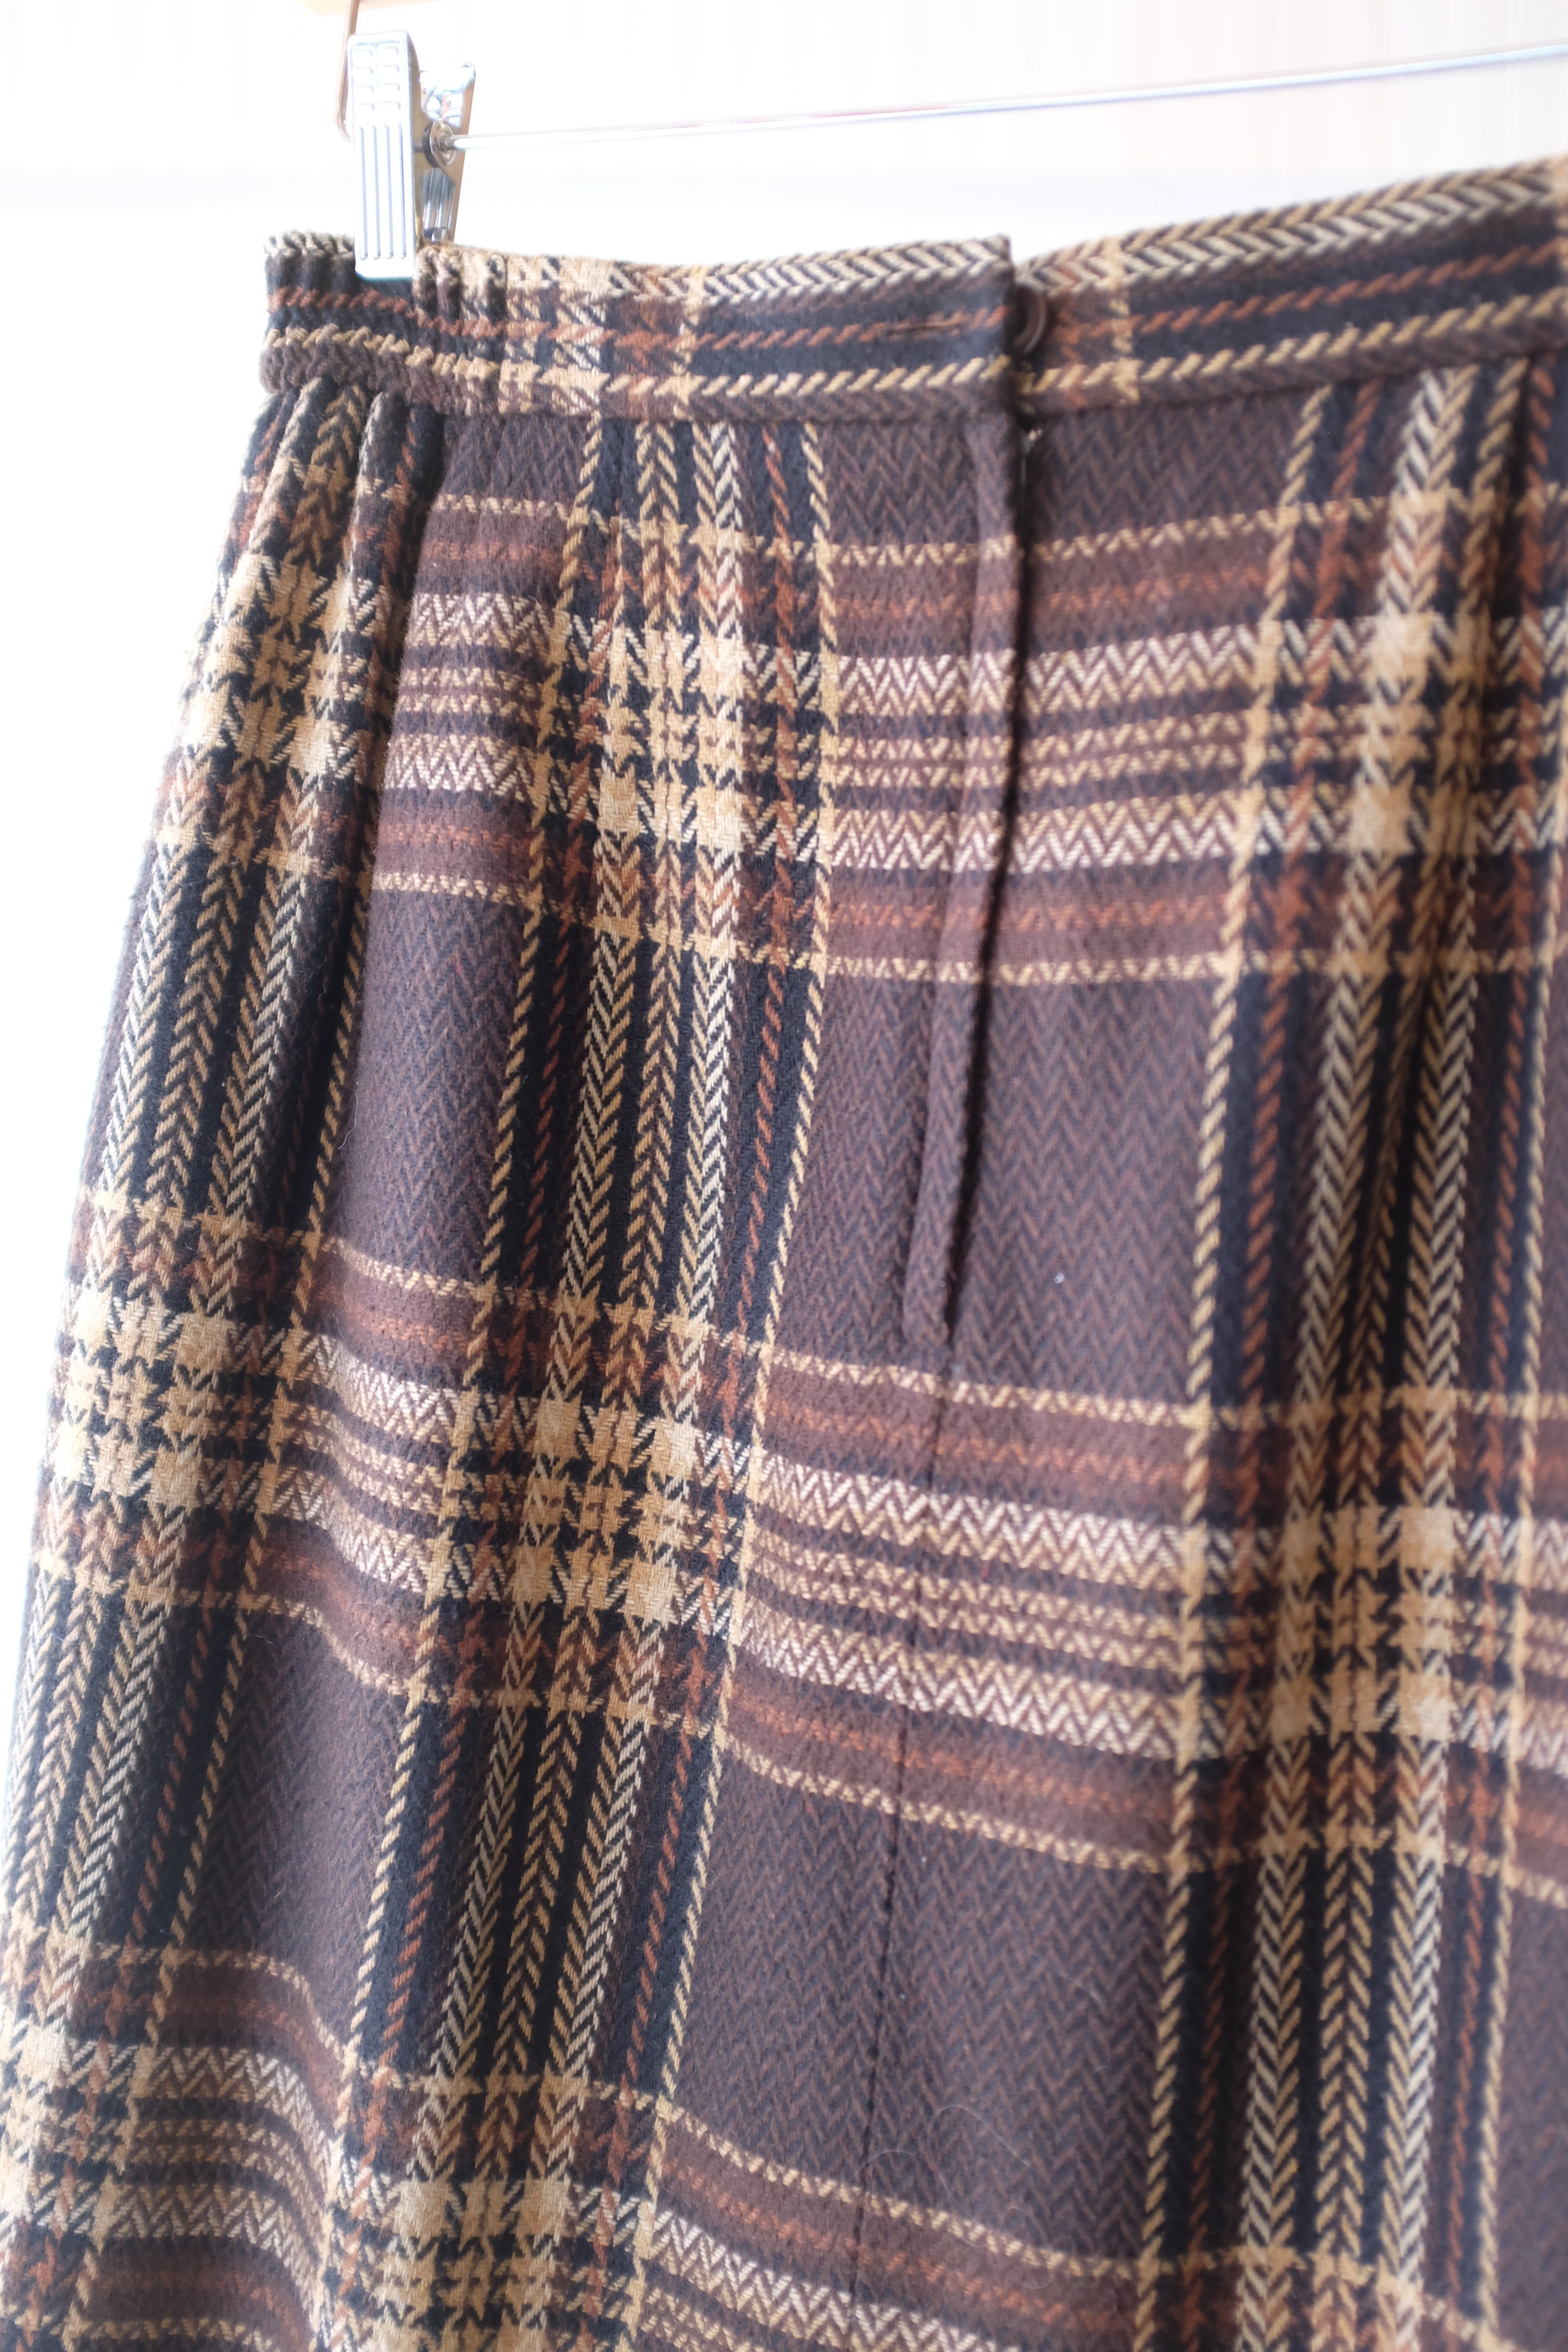 Worthington Flannel Skirt - Vintage Womens